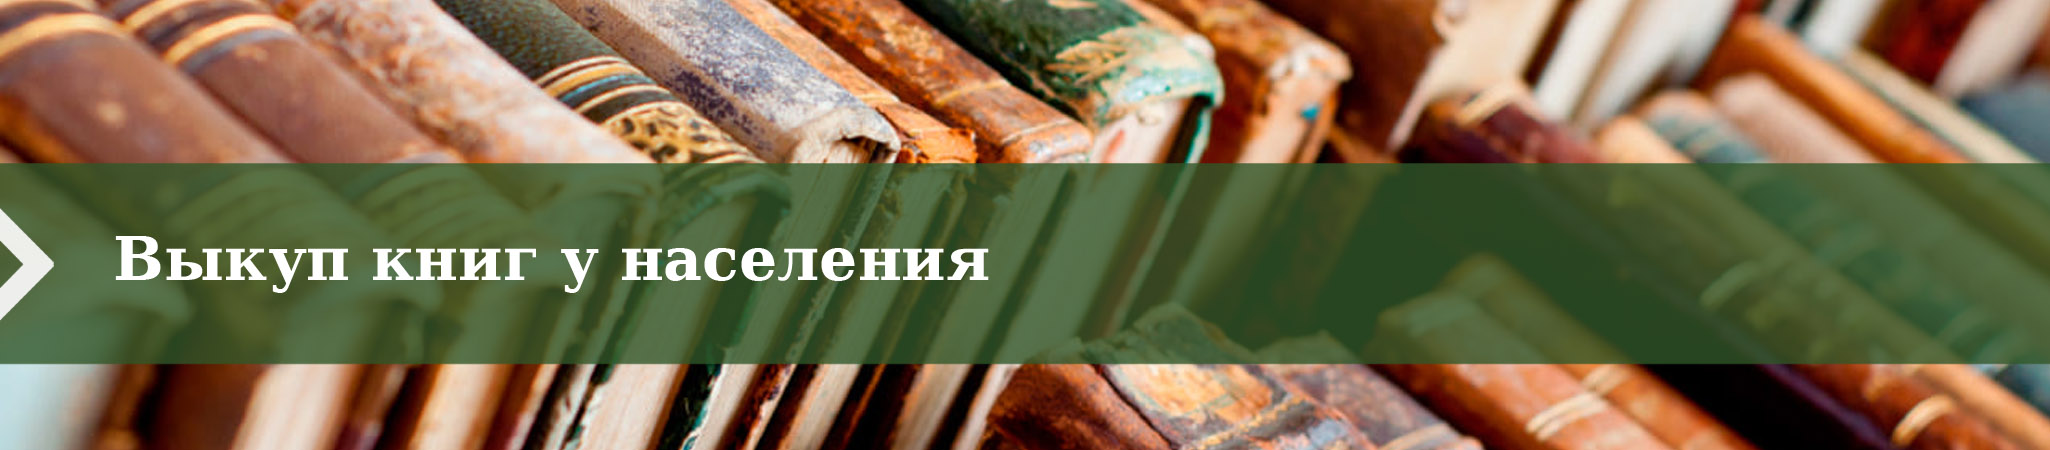 Выкуп книг у населения Москвы